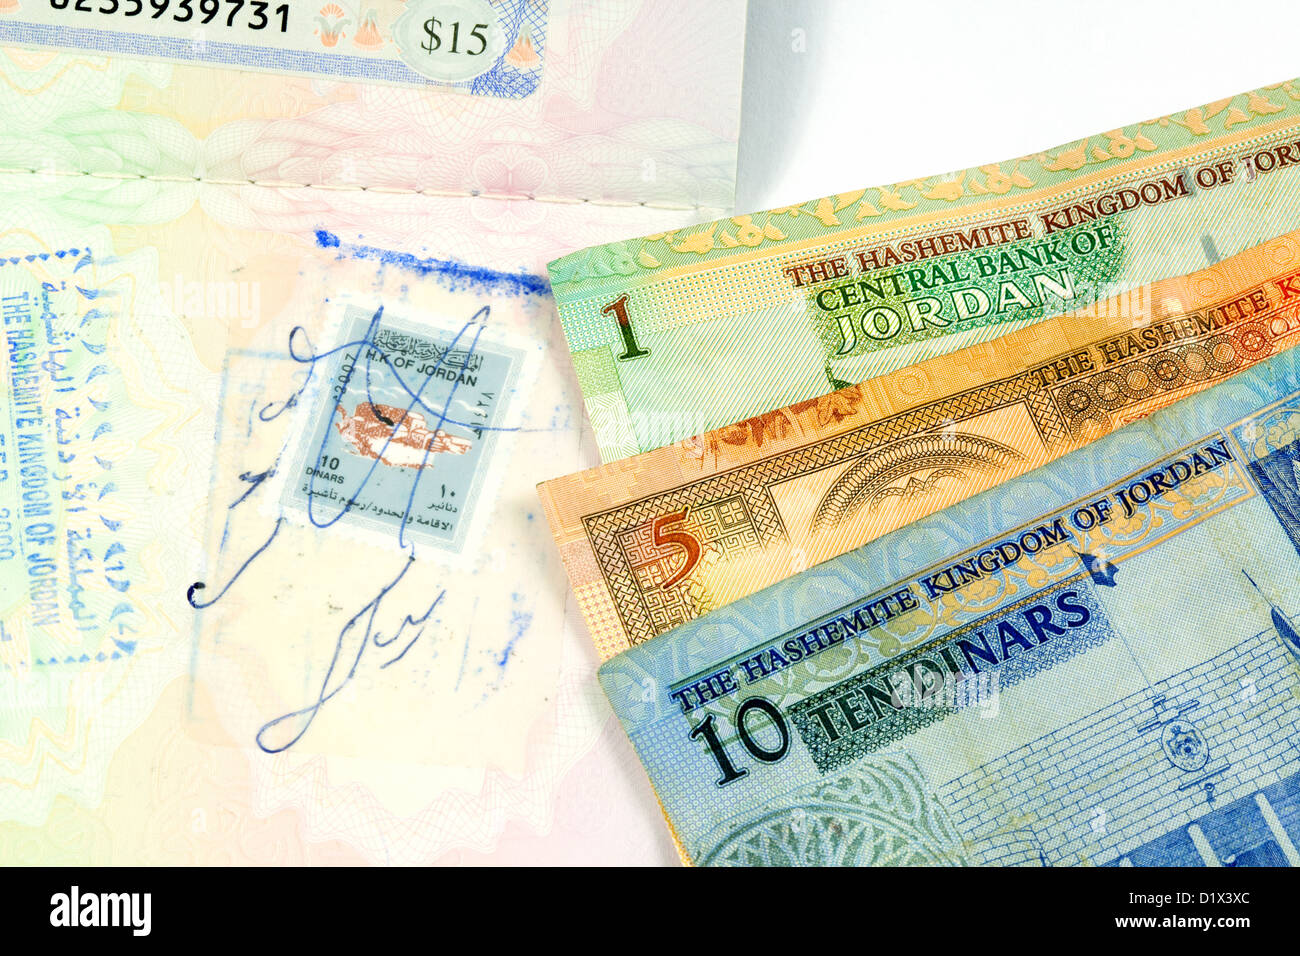 Jordania viajes dinares moneda y sello de visado en el pasaporte Foto de stock